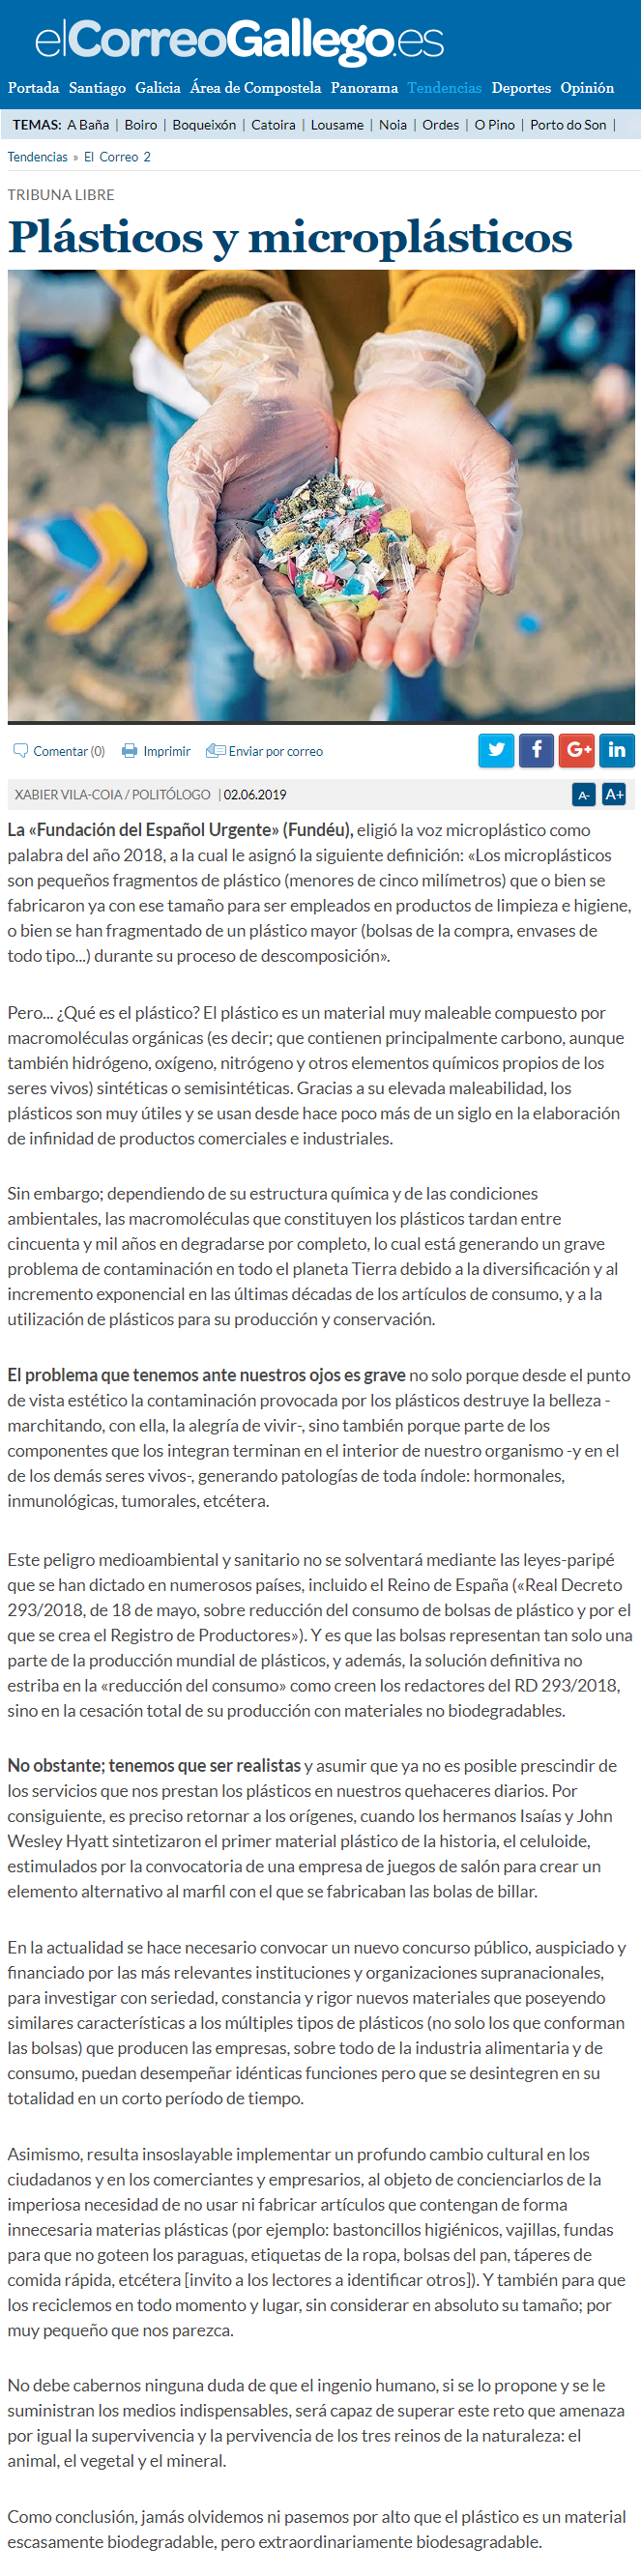 Artículo de opinión de Xabier Vila-Coia, titulado "Plásticos y microplásticos", publicado en varios diarios en mayo y junio de 2019.